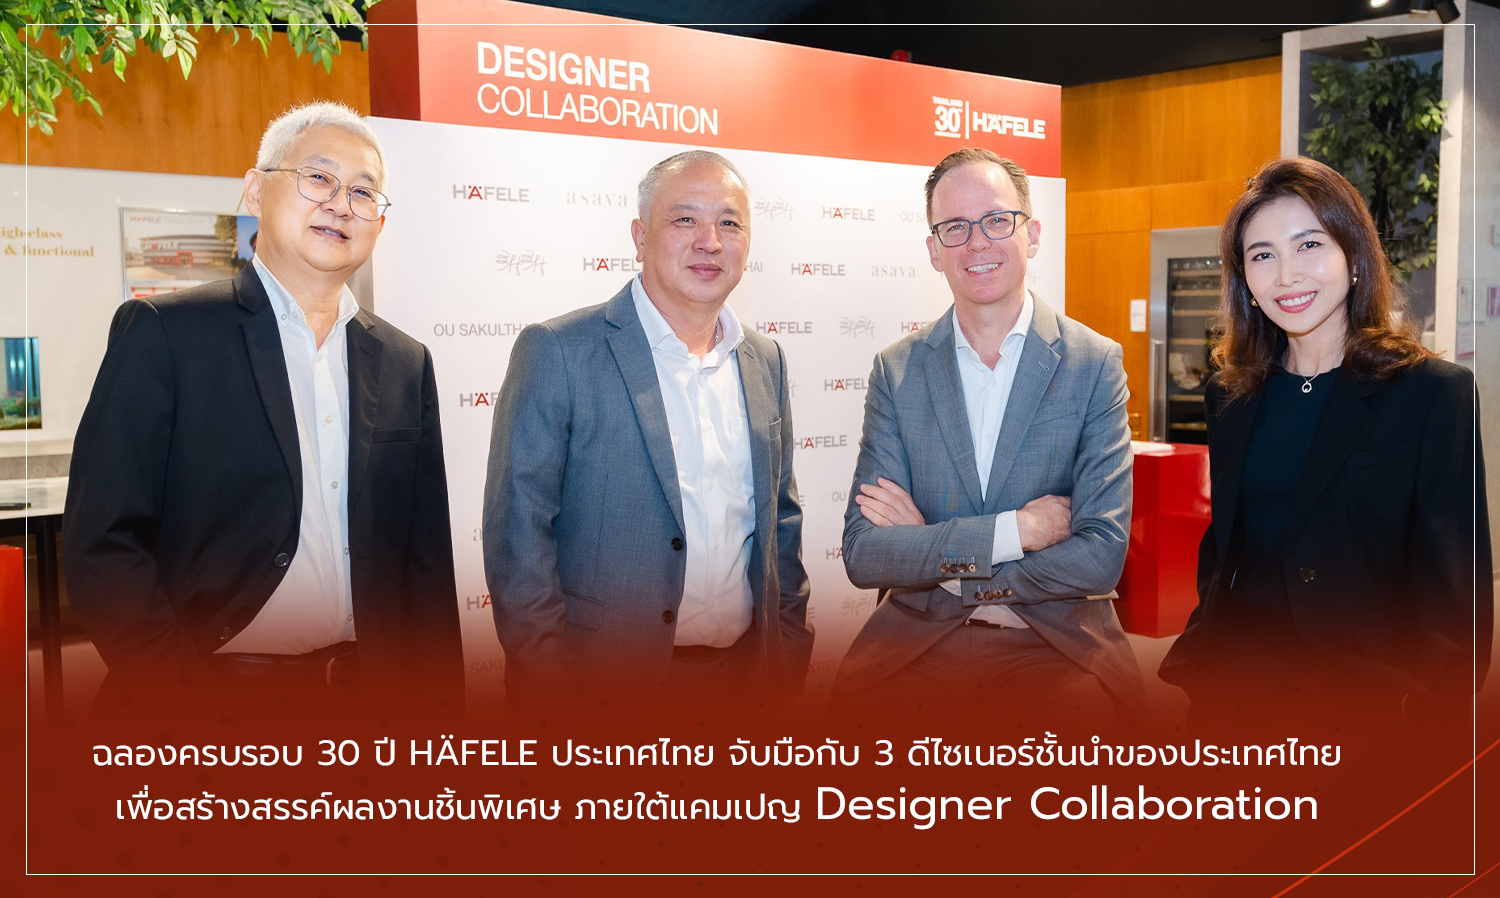 ฉลองครบรอบ 30 ปี HÄFELE ประเทศไทย จับมือกับ 3 ดีไซเนอร์ชั้นนำของประเทศไทย เพื่อสร้างสรรค์ผลงานชิ้นพิเศษ ภายใต้แคมเปญ Designer Collaboration